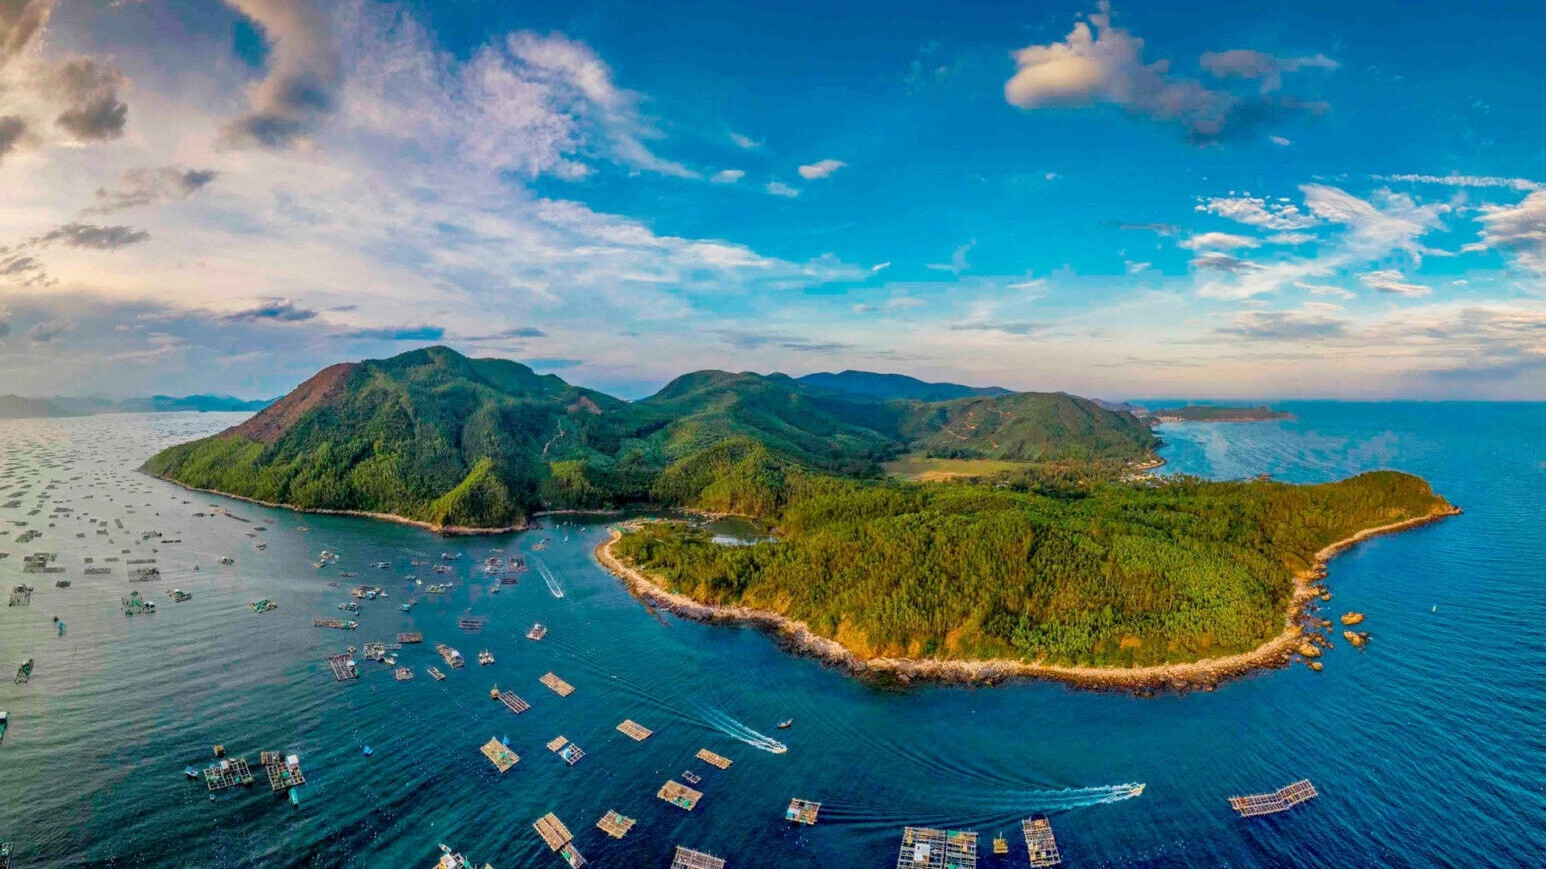 Bảo vệ tài nguyên, môi trường biển, thúc đẩy phát triển bền vững kinh tế biển Việt Nam